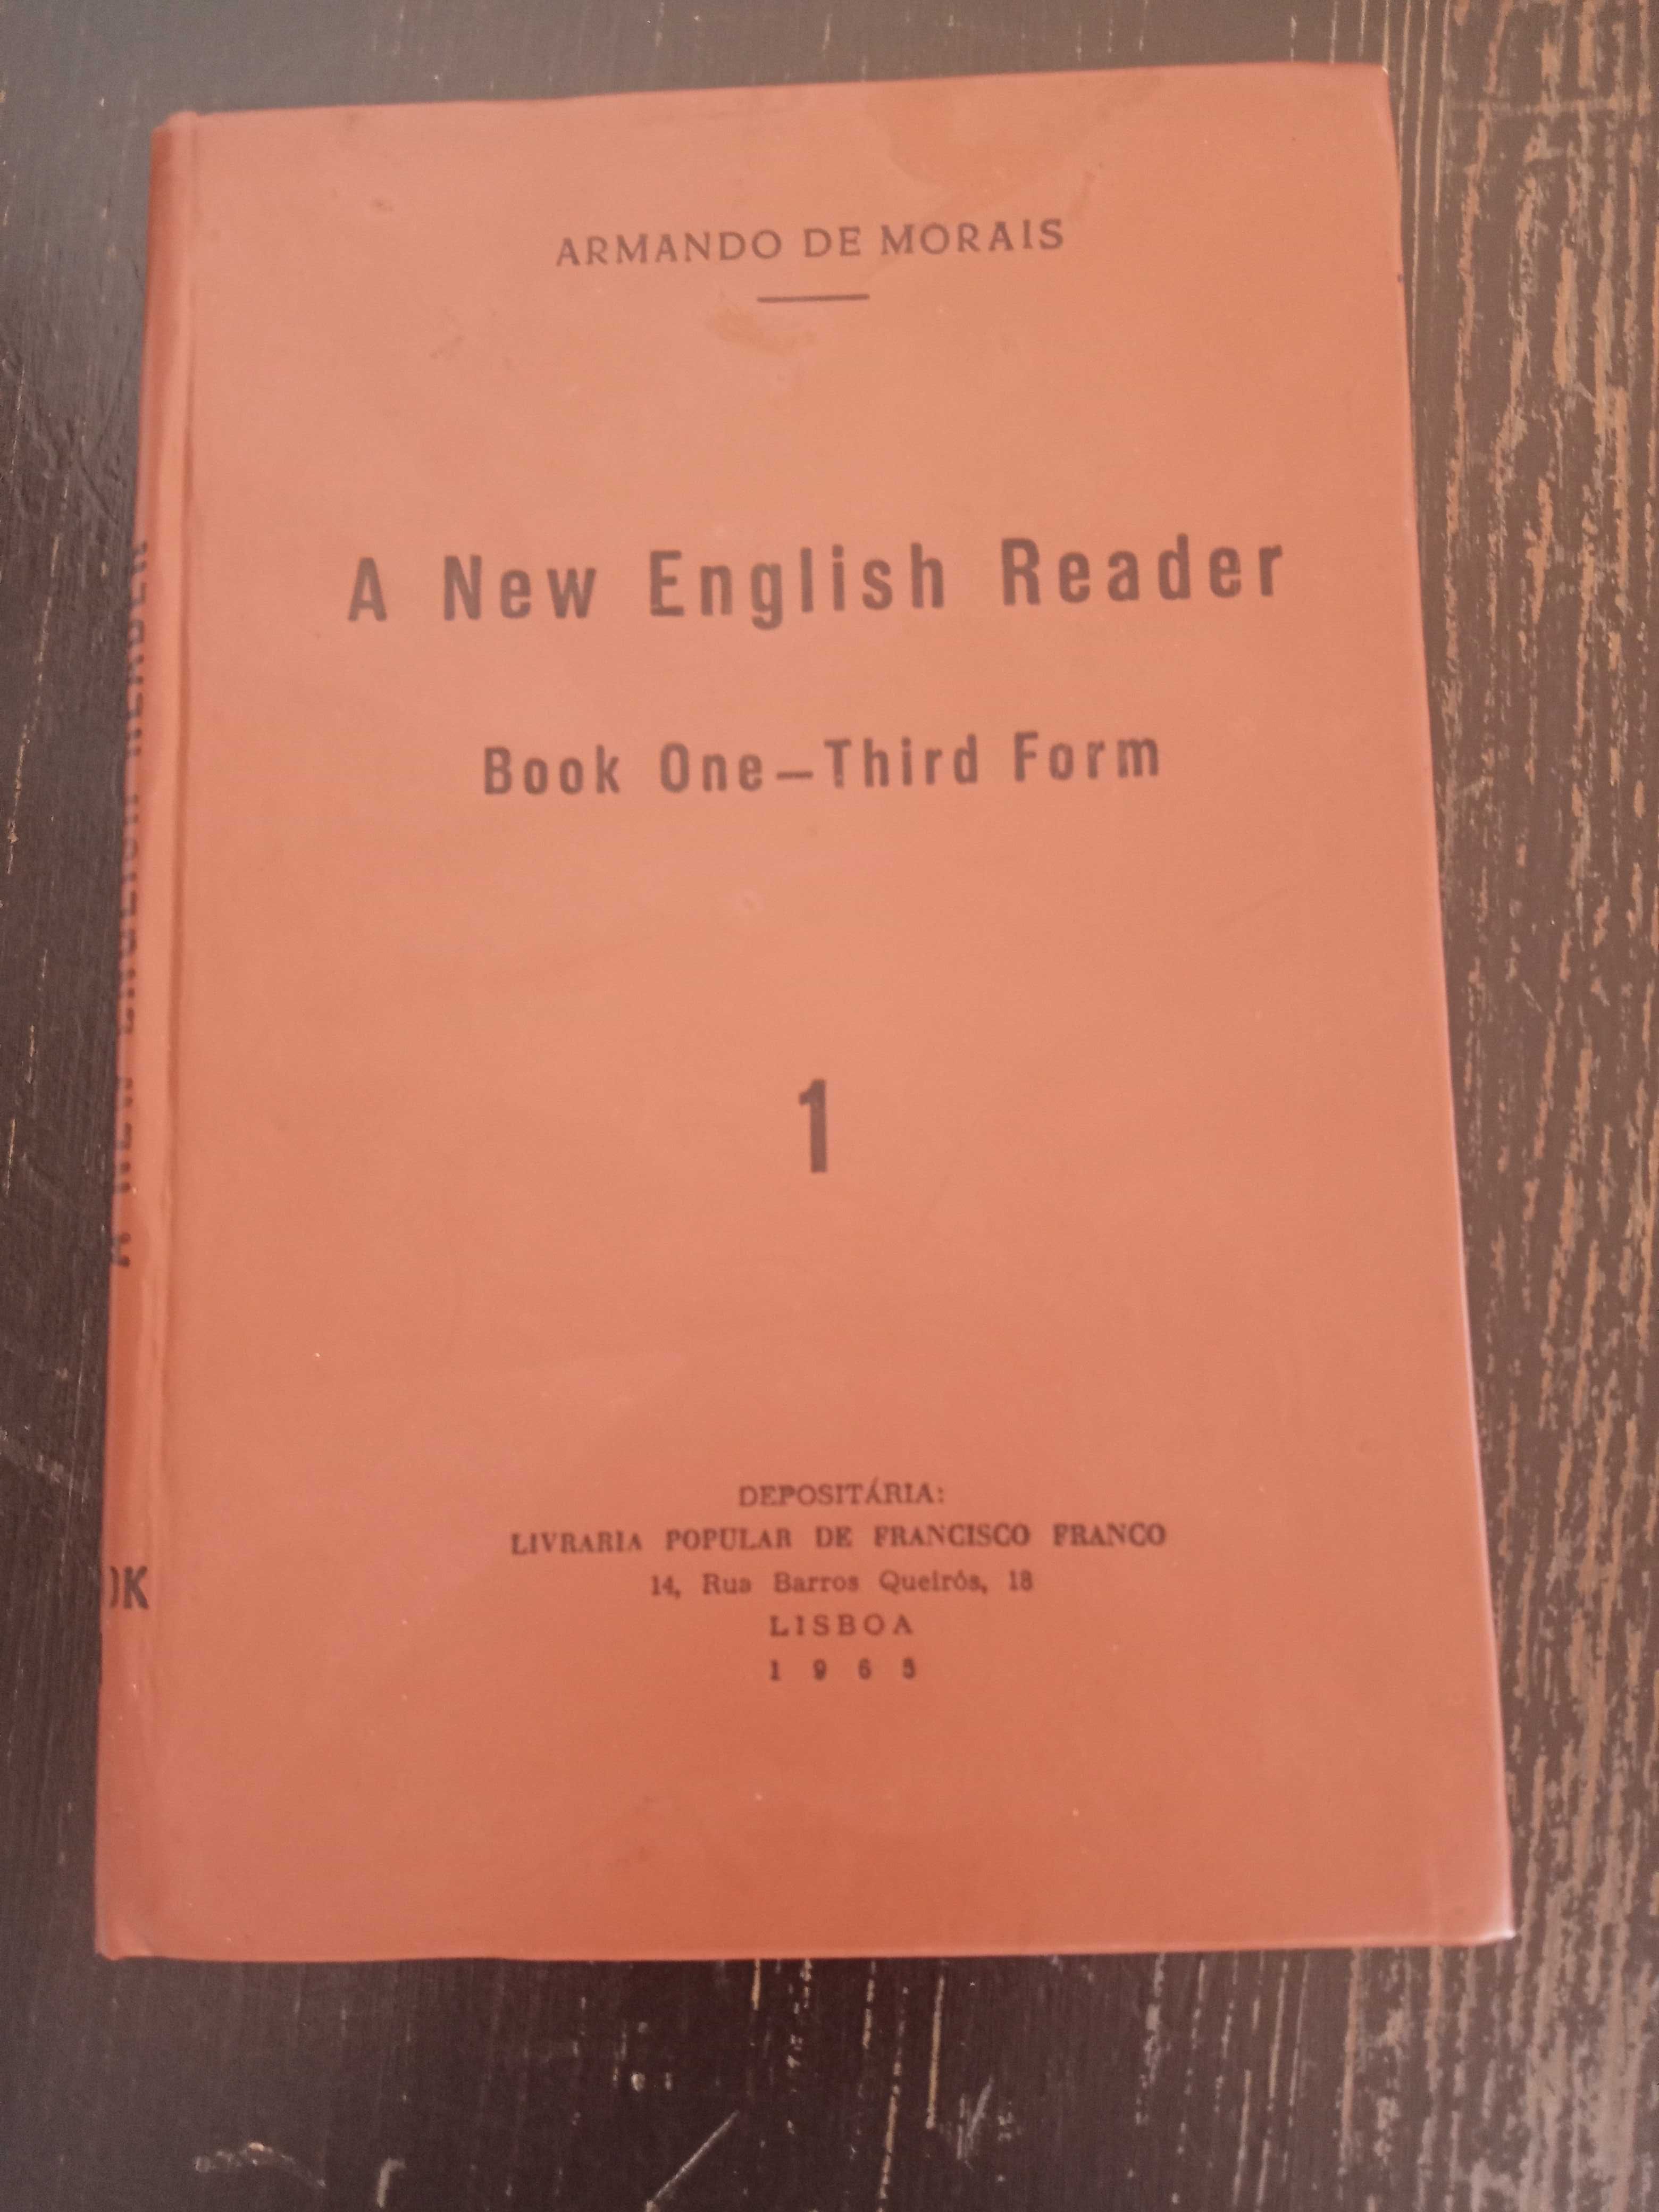 A New English Reader - Book One - Third Form, 1965, Armando de Morais.